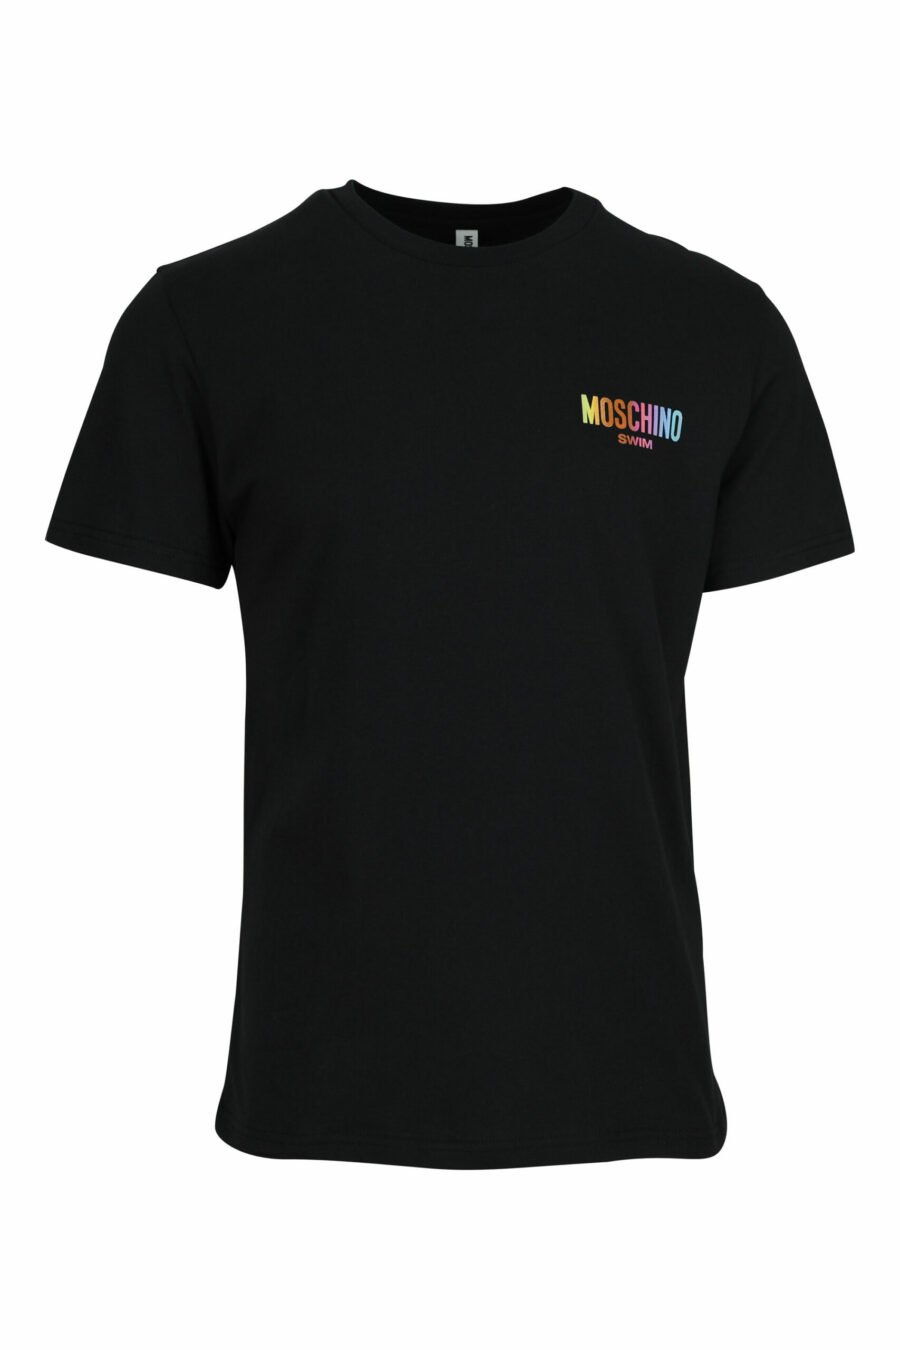 T-shirt noir avec minilogue multicolore - 667113672588 scaled